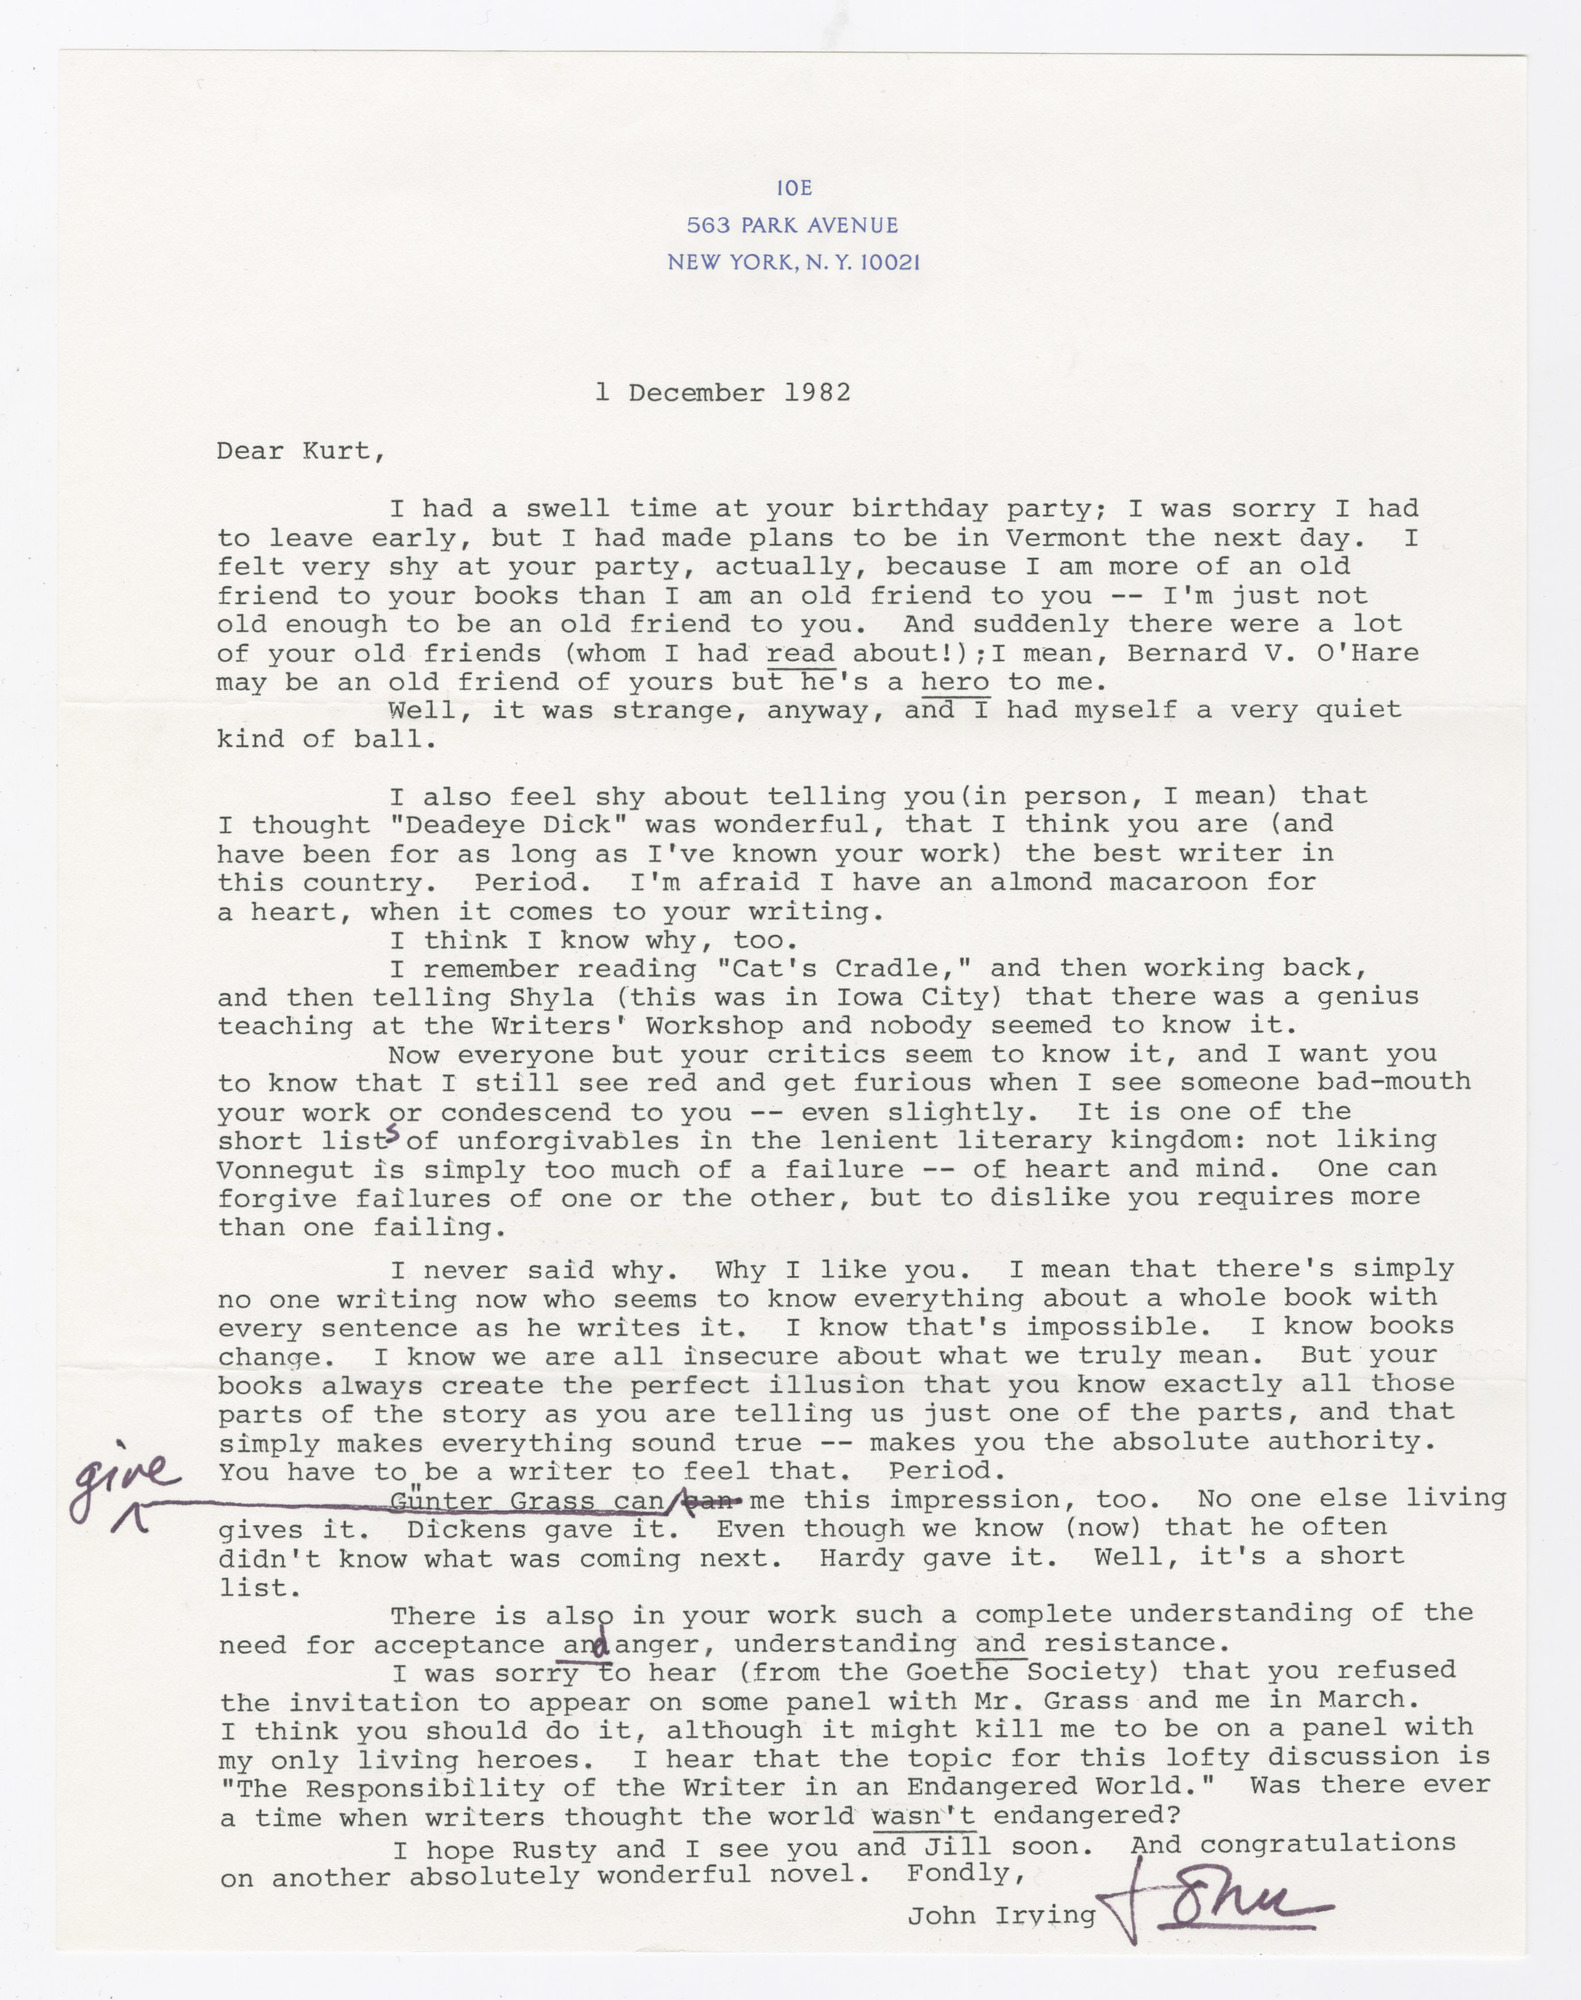 John Irving to Kurt Vonnegut, December 1, 1982.